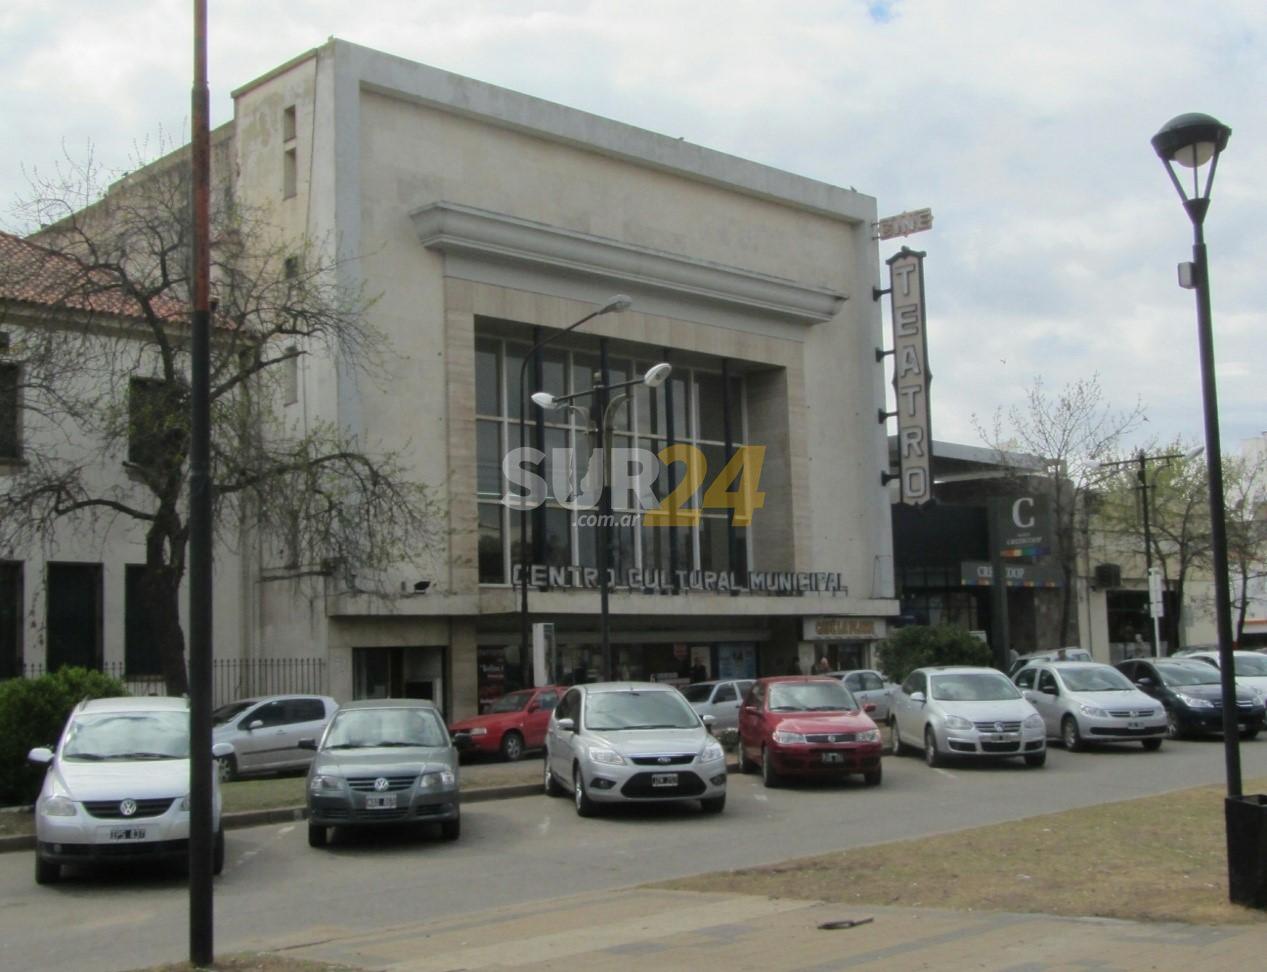 El Colegio de Arquitectos participó en la recuperación del Centro Cultural Municipal